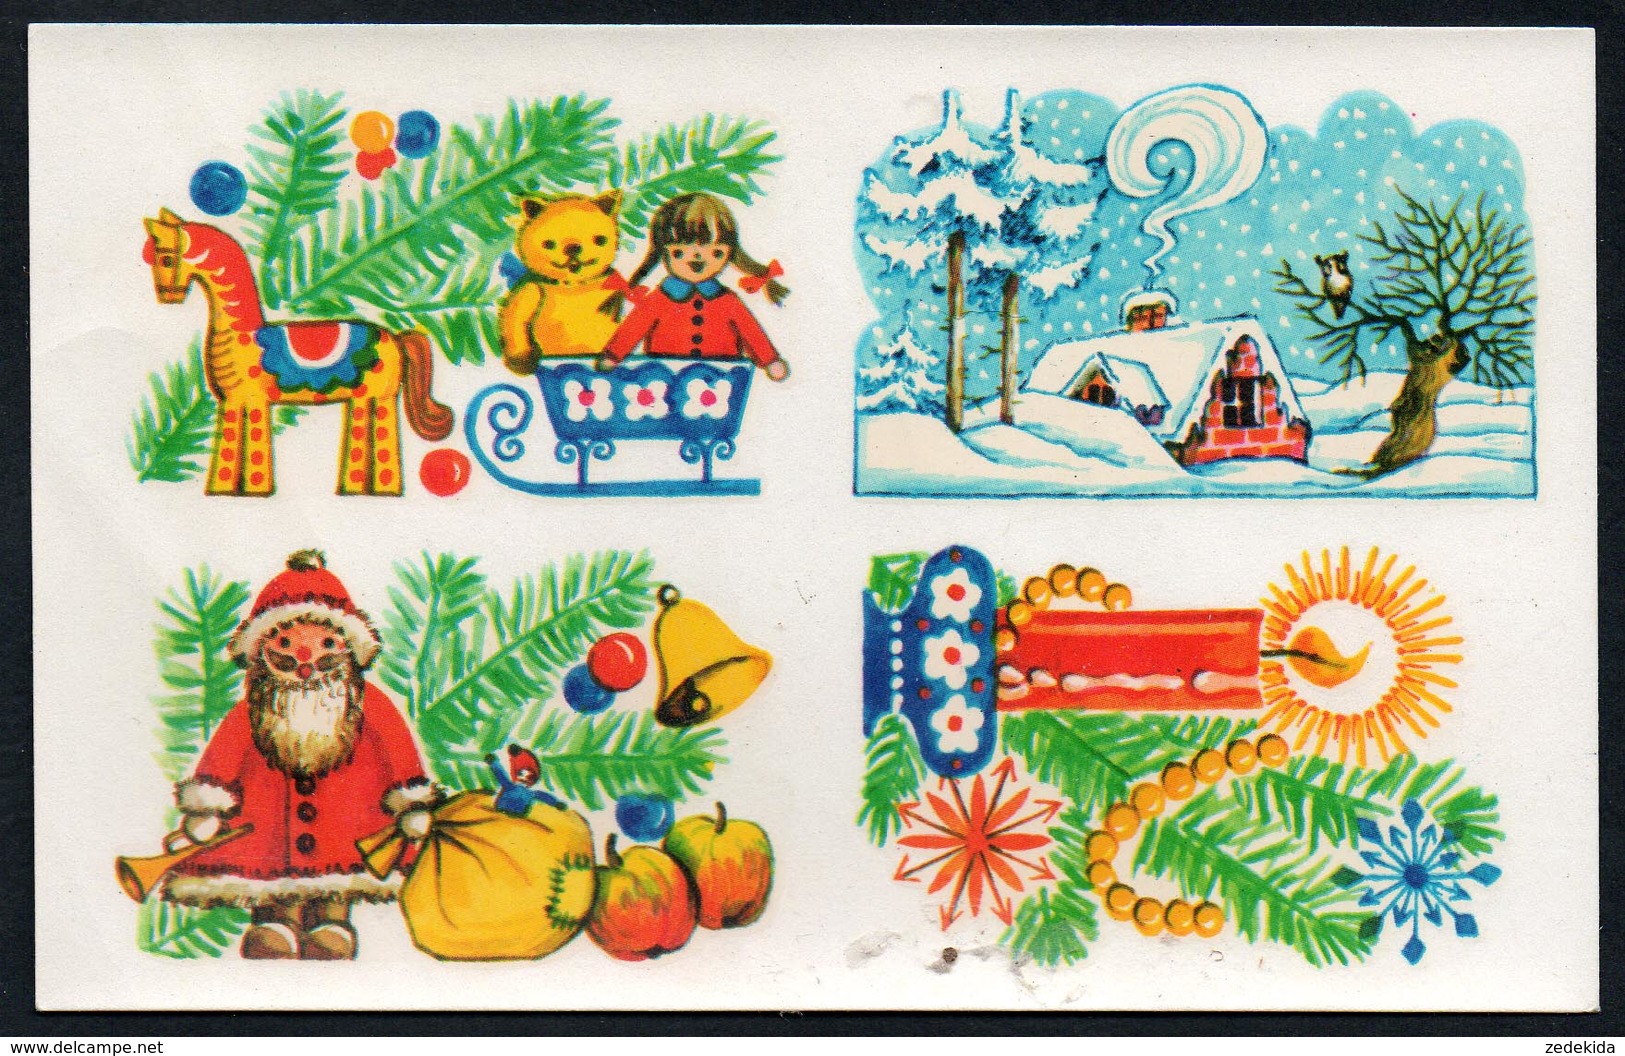 9626  - Abziehbild Schiebebild - Weihnachten Weihnachtsmann - Planet Verlag DDR 1979 - Santa Claus